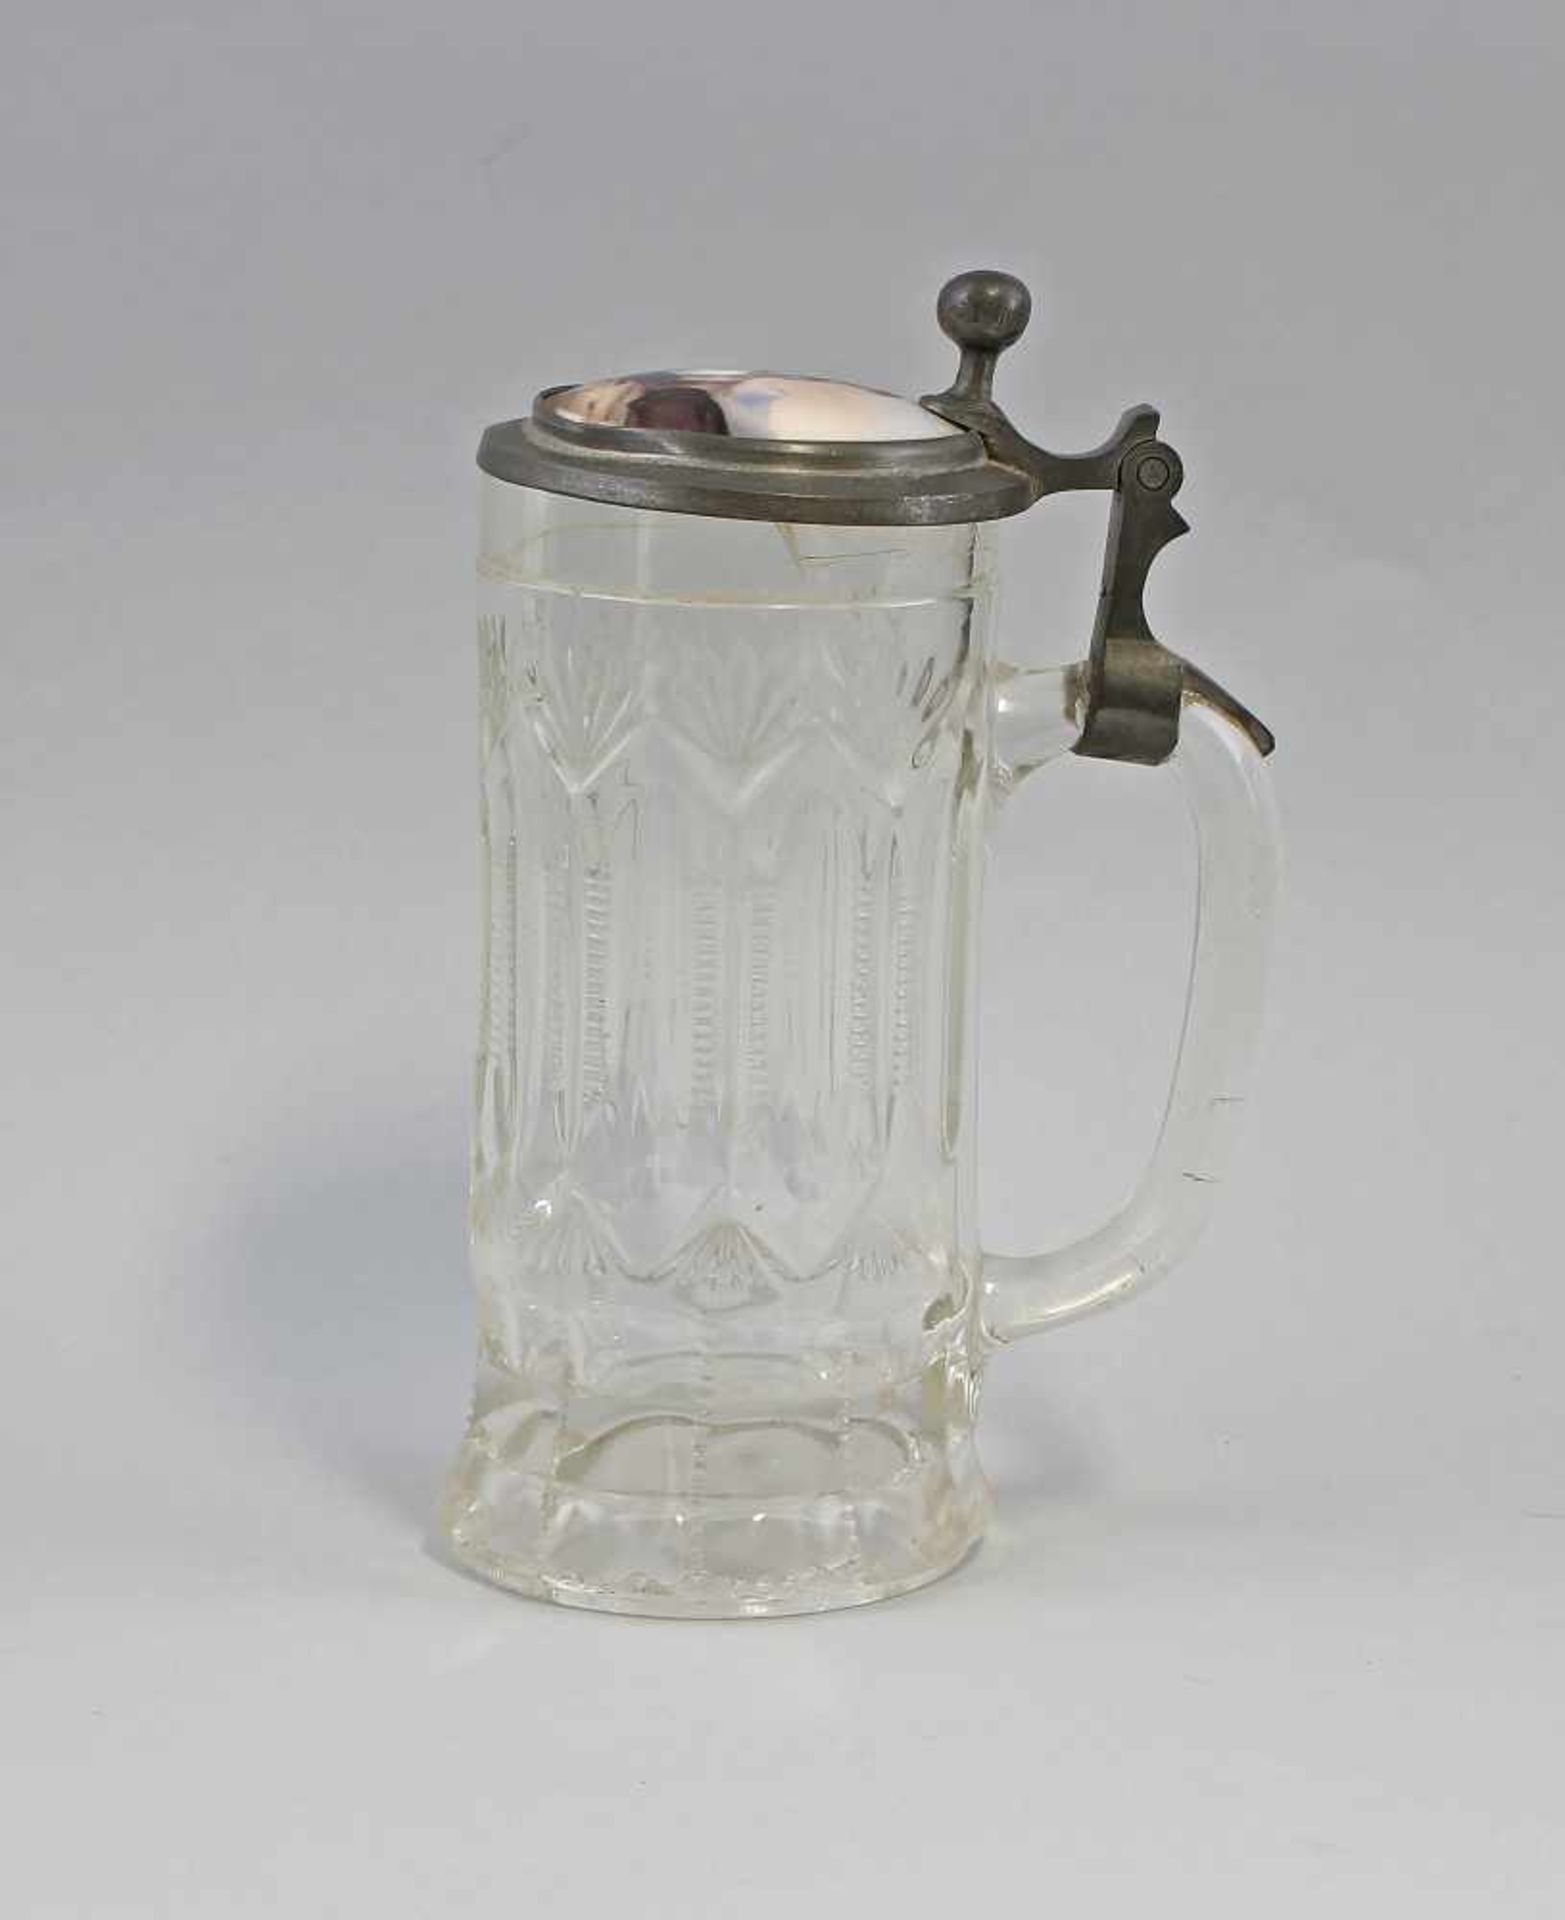 Glas-Bierkrug mit Porzellandeckel19.Jh. farbloses Glas in die Form gepresst, zinnmontierter